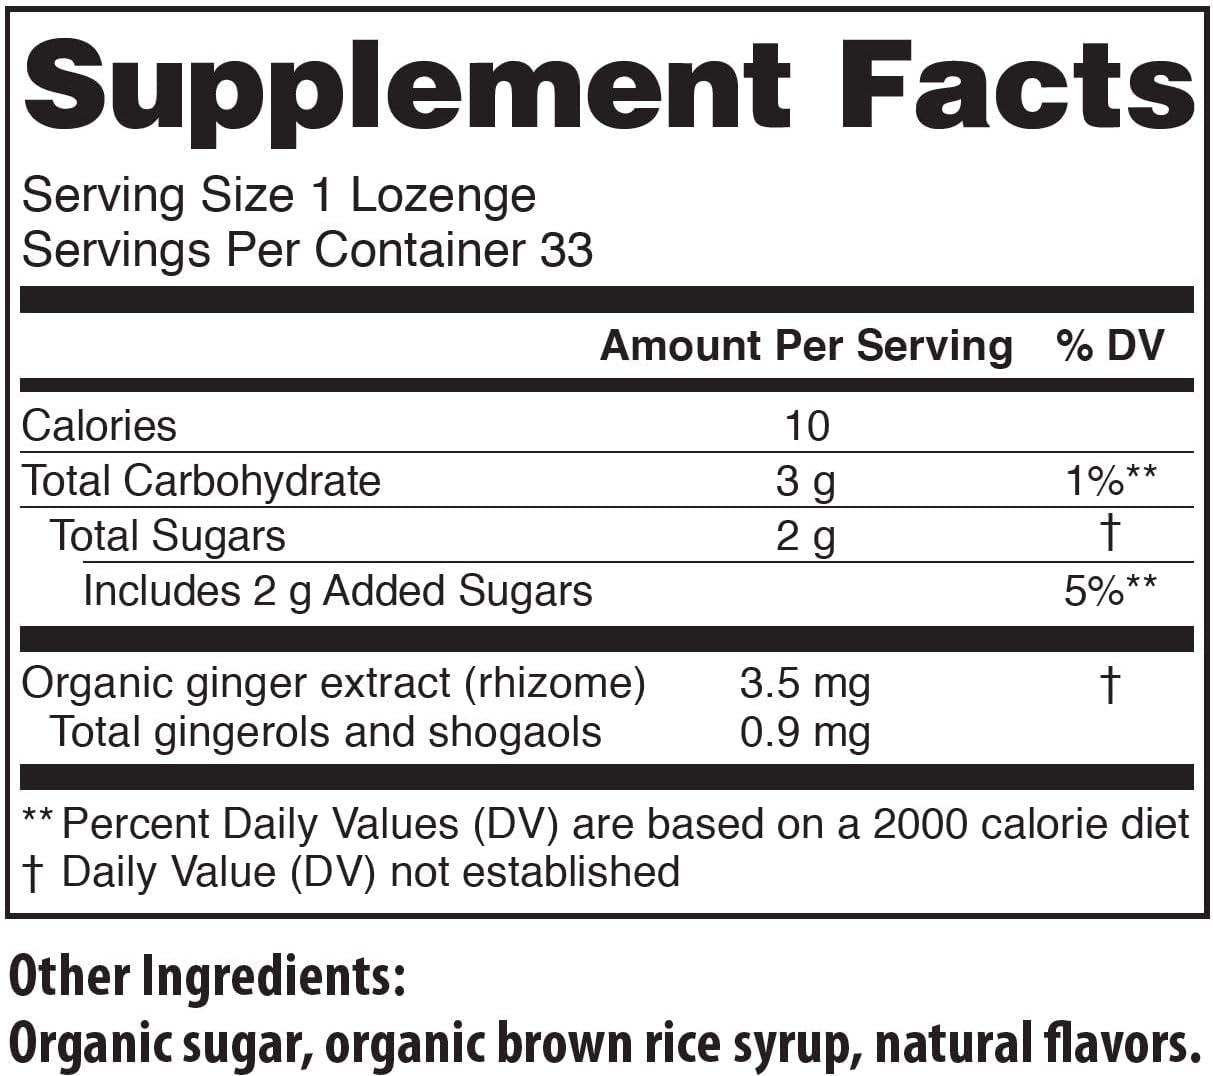 USDA Organic Natural Ginger Tummydrops, Bag of 33 Drops